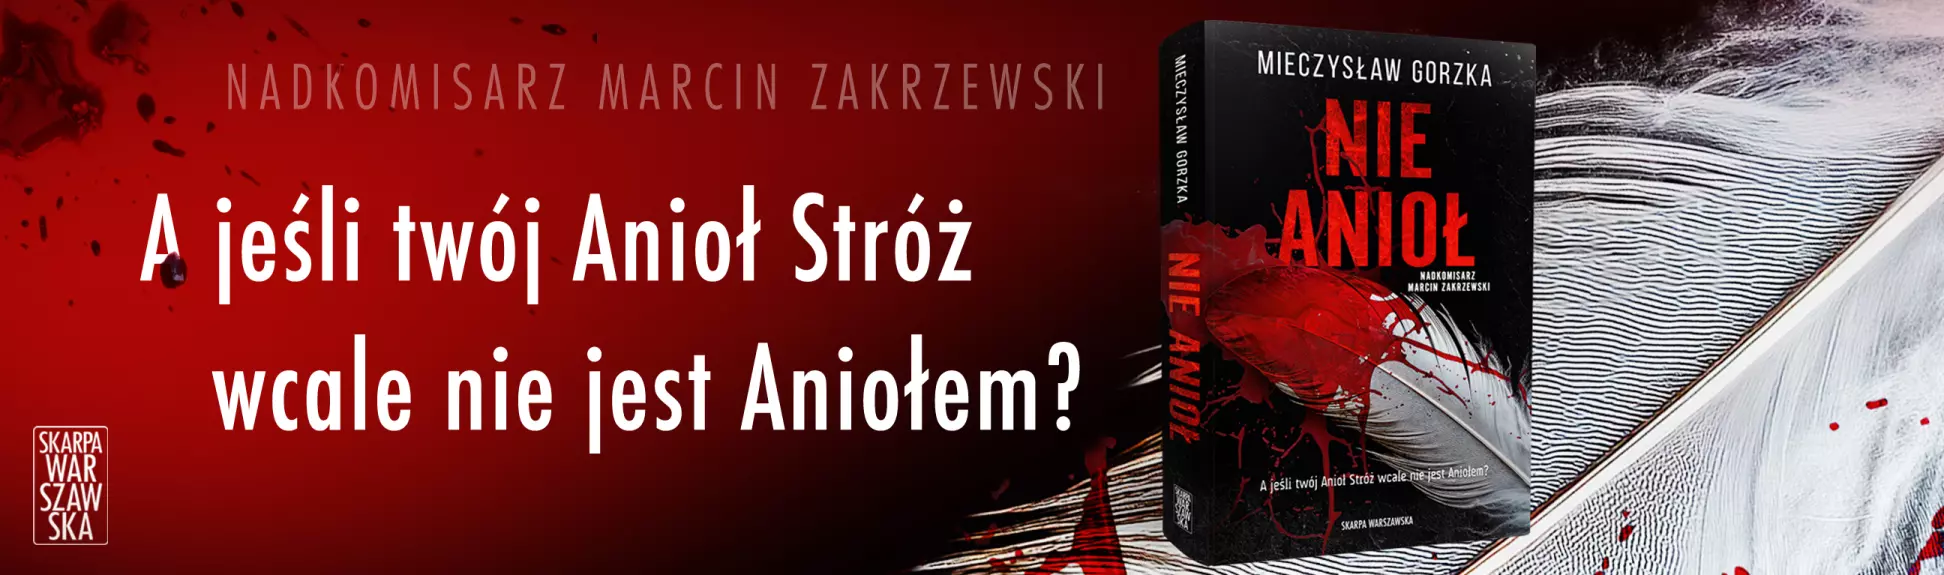 Najnowszy tytuł polskiego mistrza thillerów - Mieczysława Gorzki!